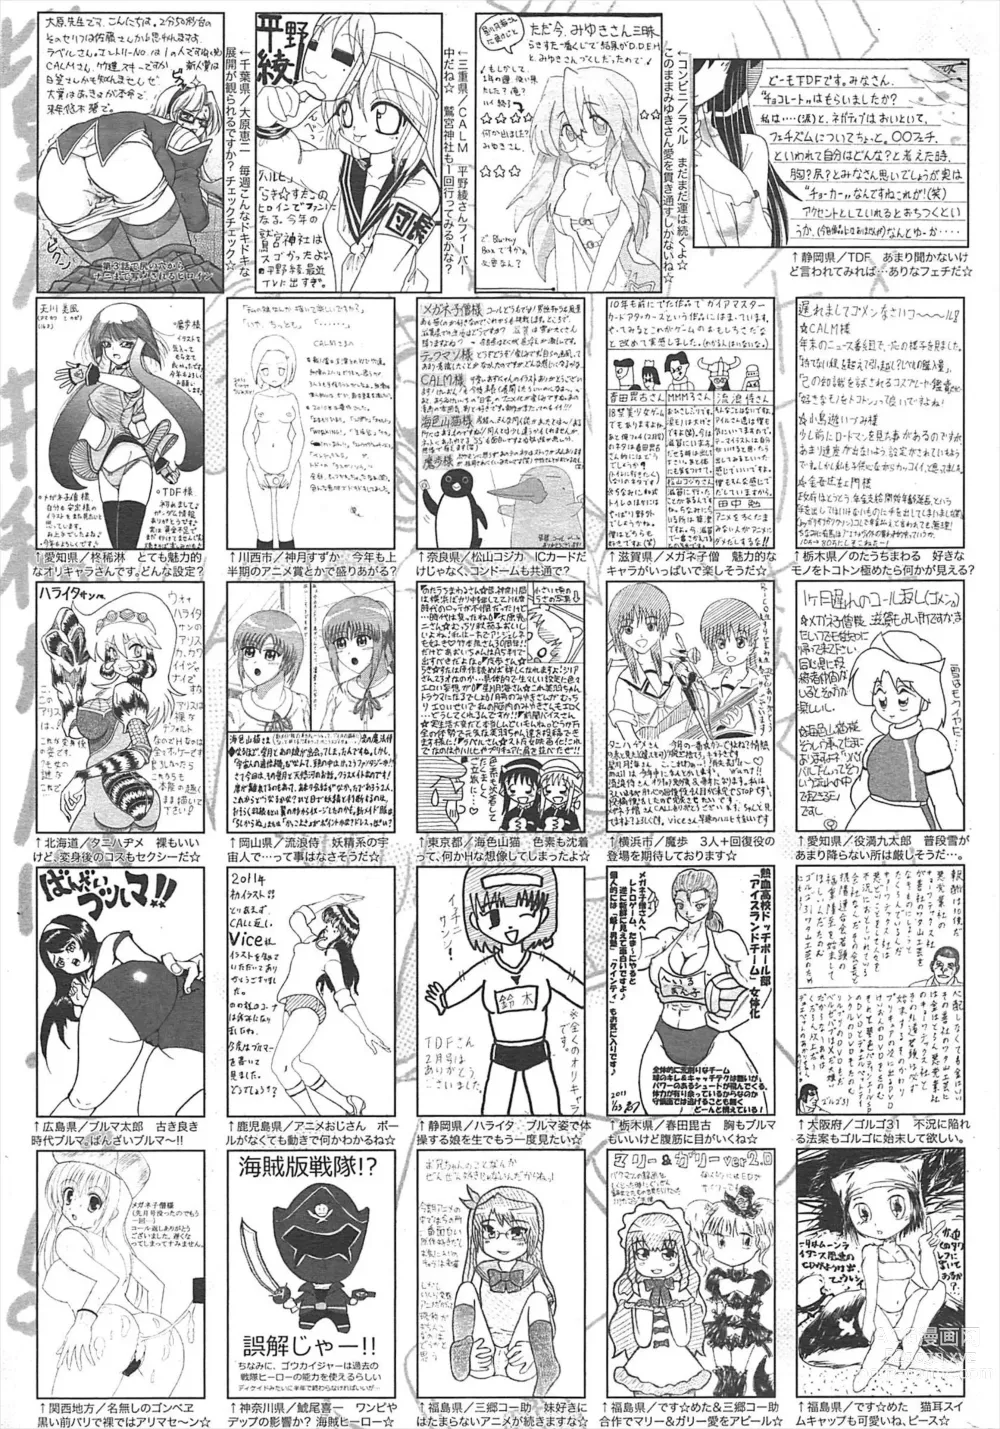 Page 258 of manga Manga Bangaichi 2011-04